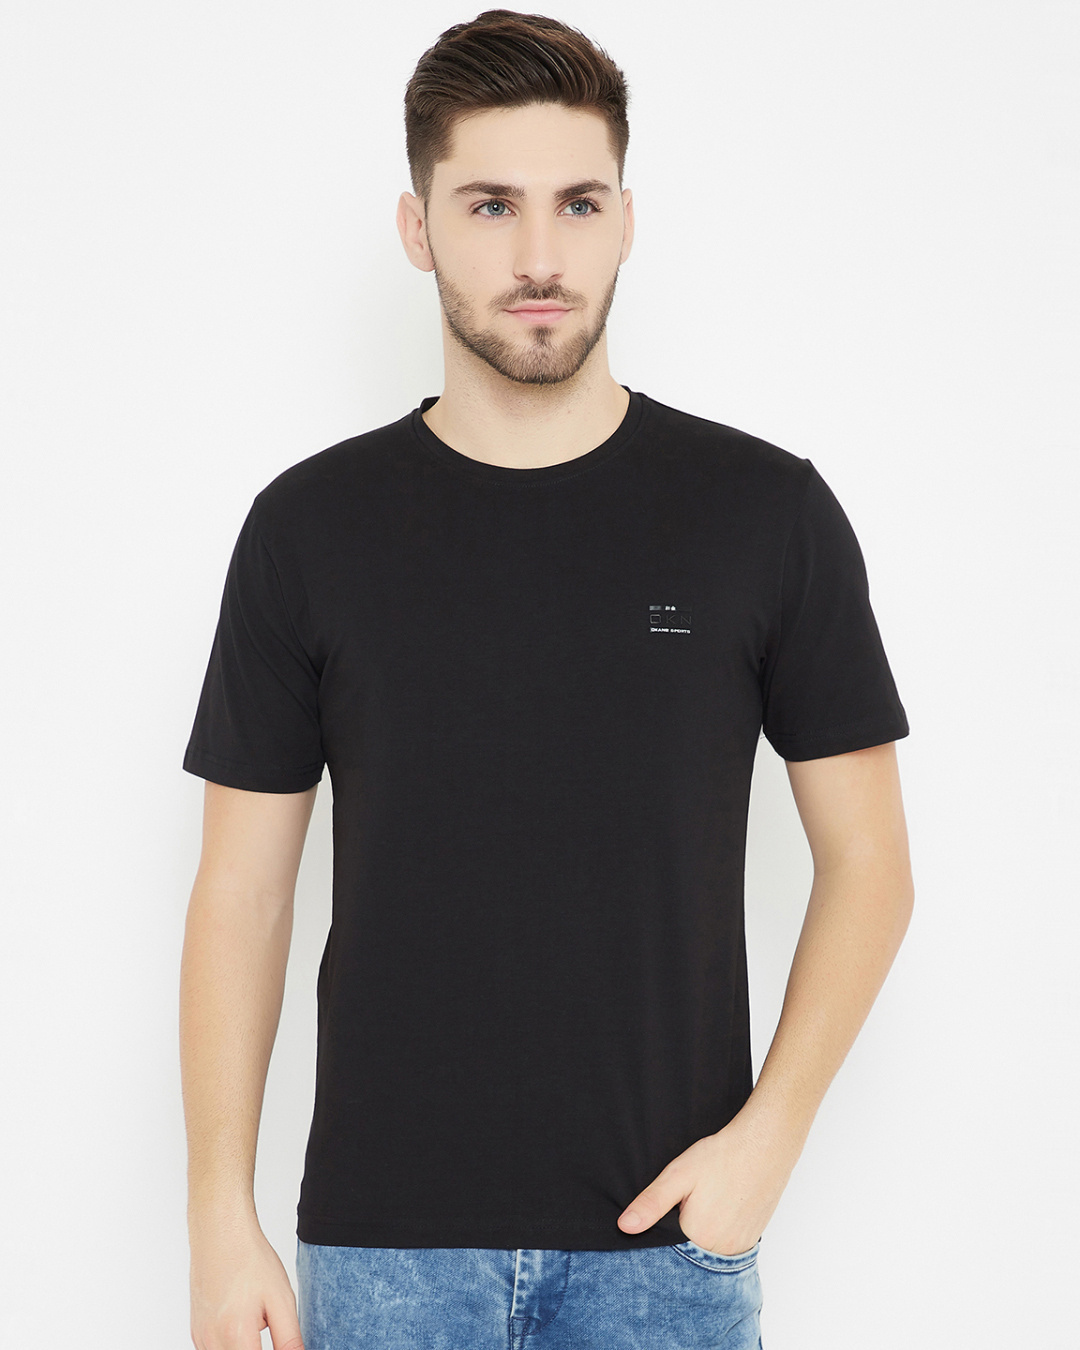 Buy Okane Men's Black Polyester Round Neck T-shirt for Men Black Online ...